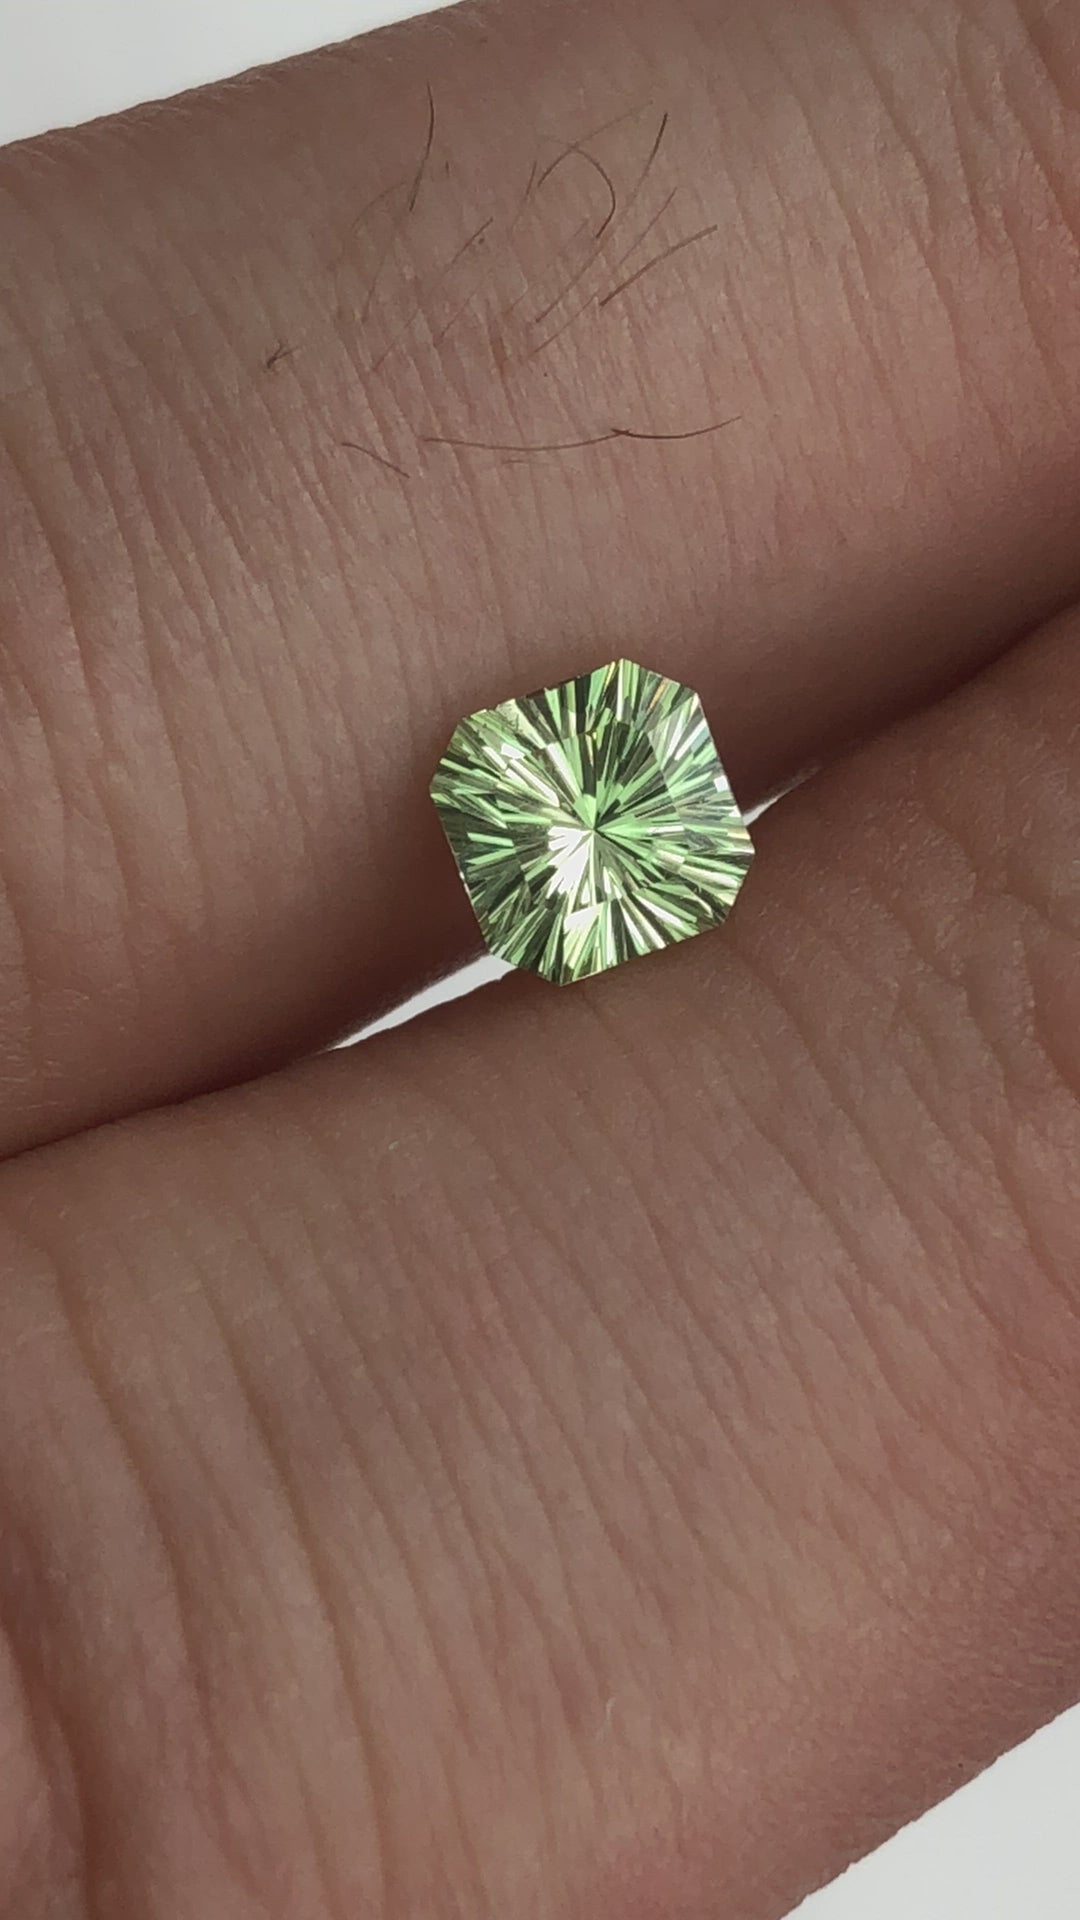 Grenat vert taille fantaisie - Grenat carré en forme d'émeraude - 0,88 carats 5,4 mm